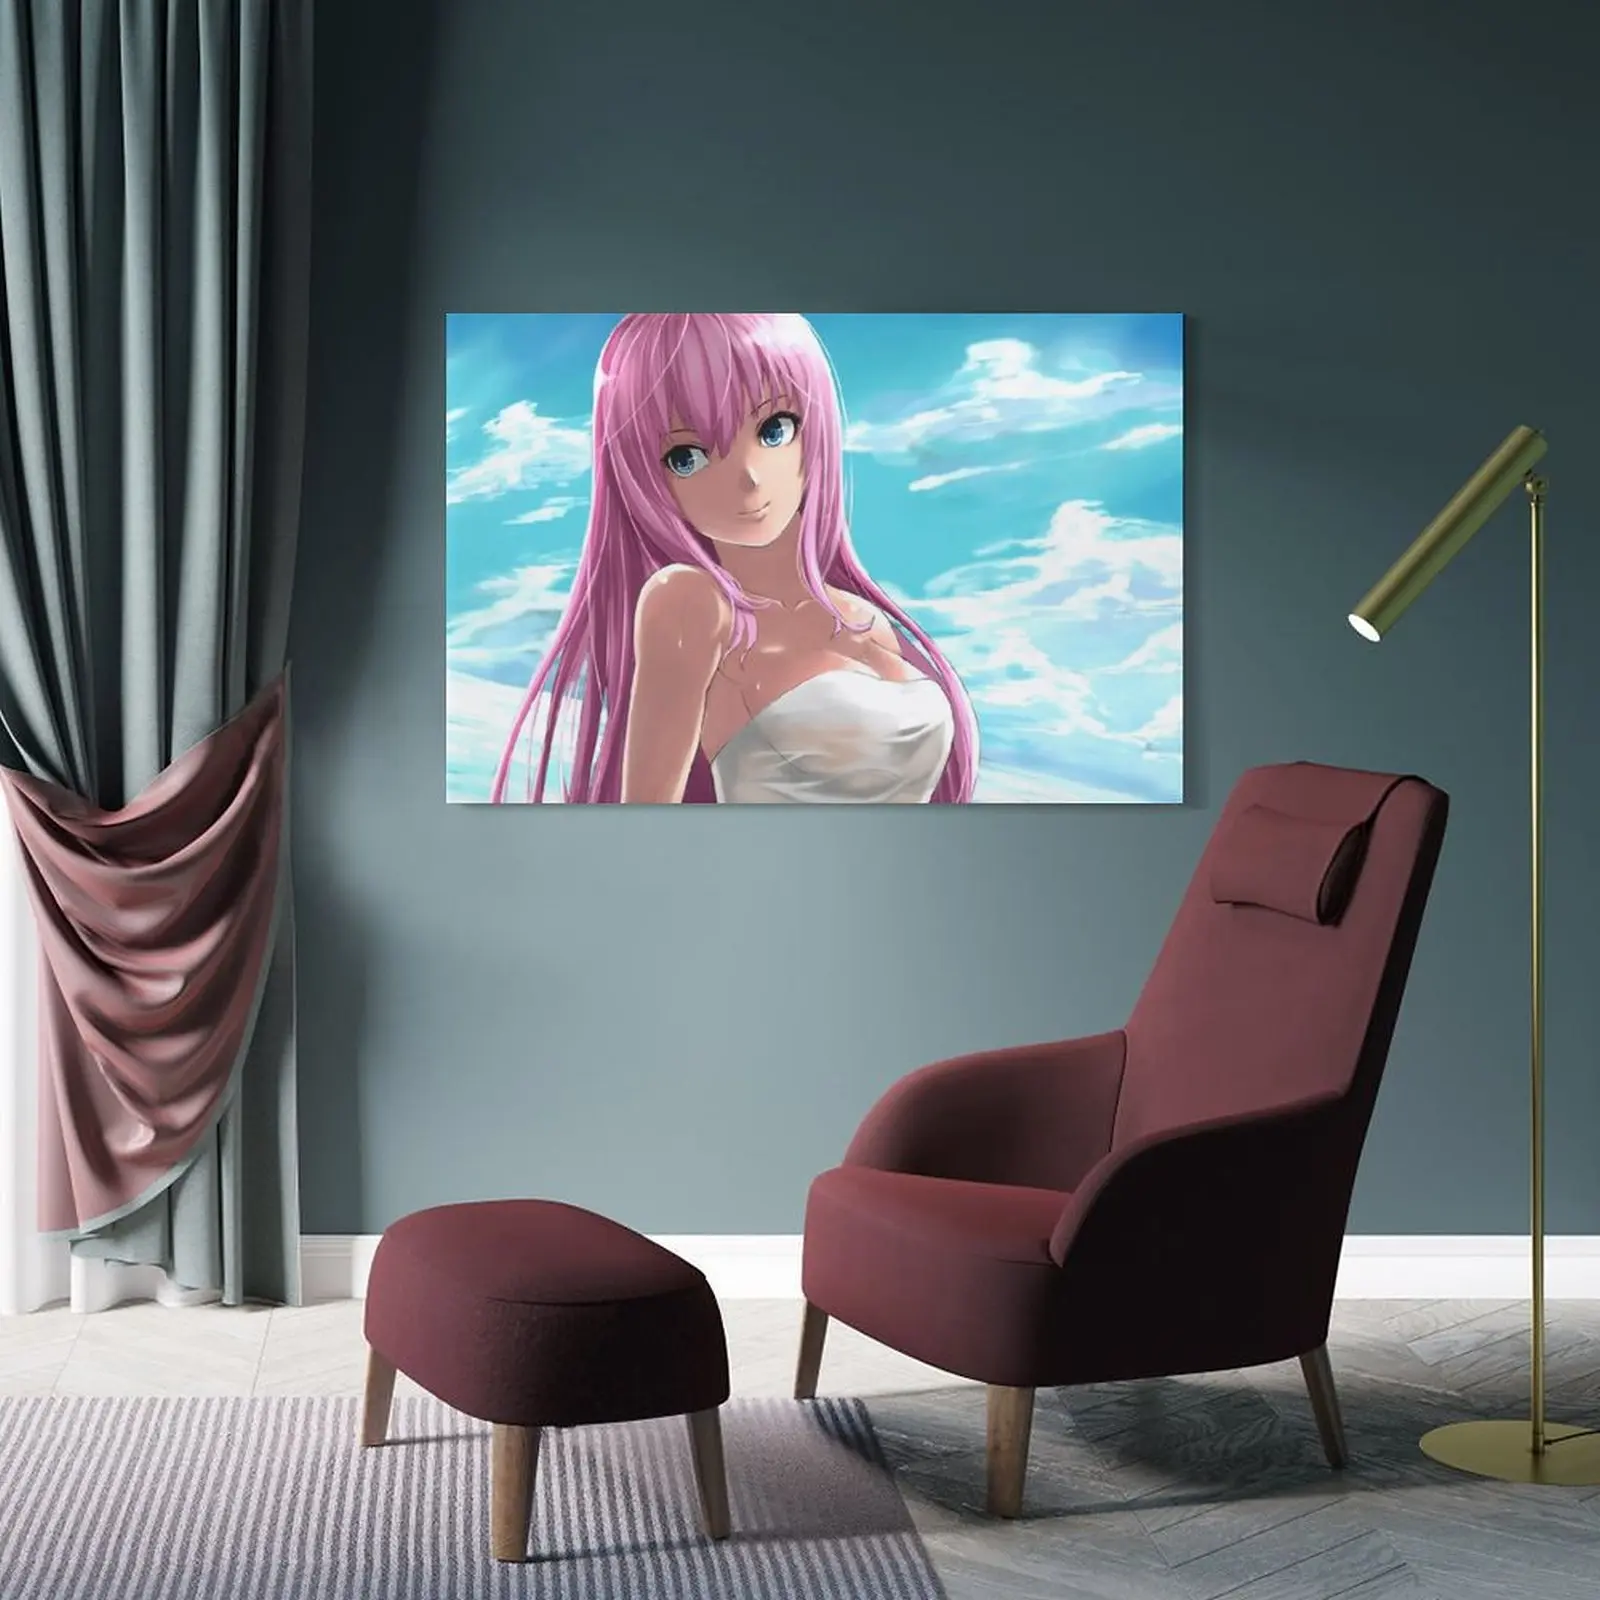 Vocaloid Megurine Luka сексуальный горячий аниме девушка холст плакат Настенная картина